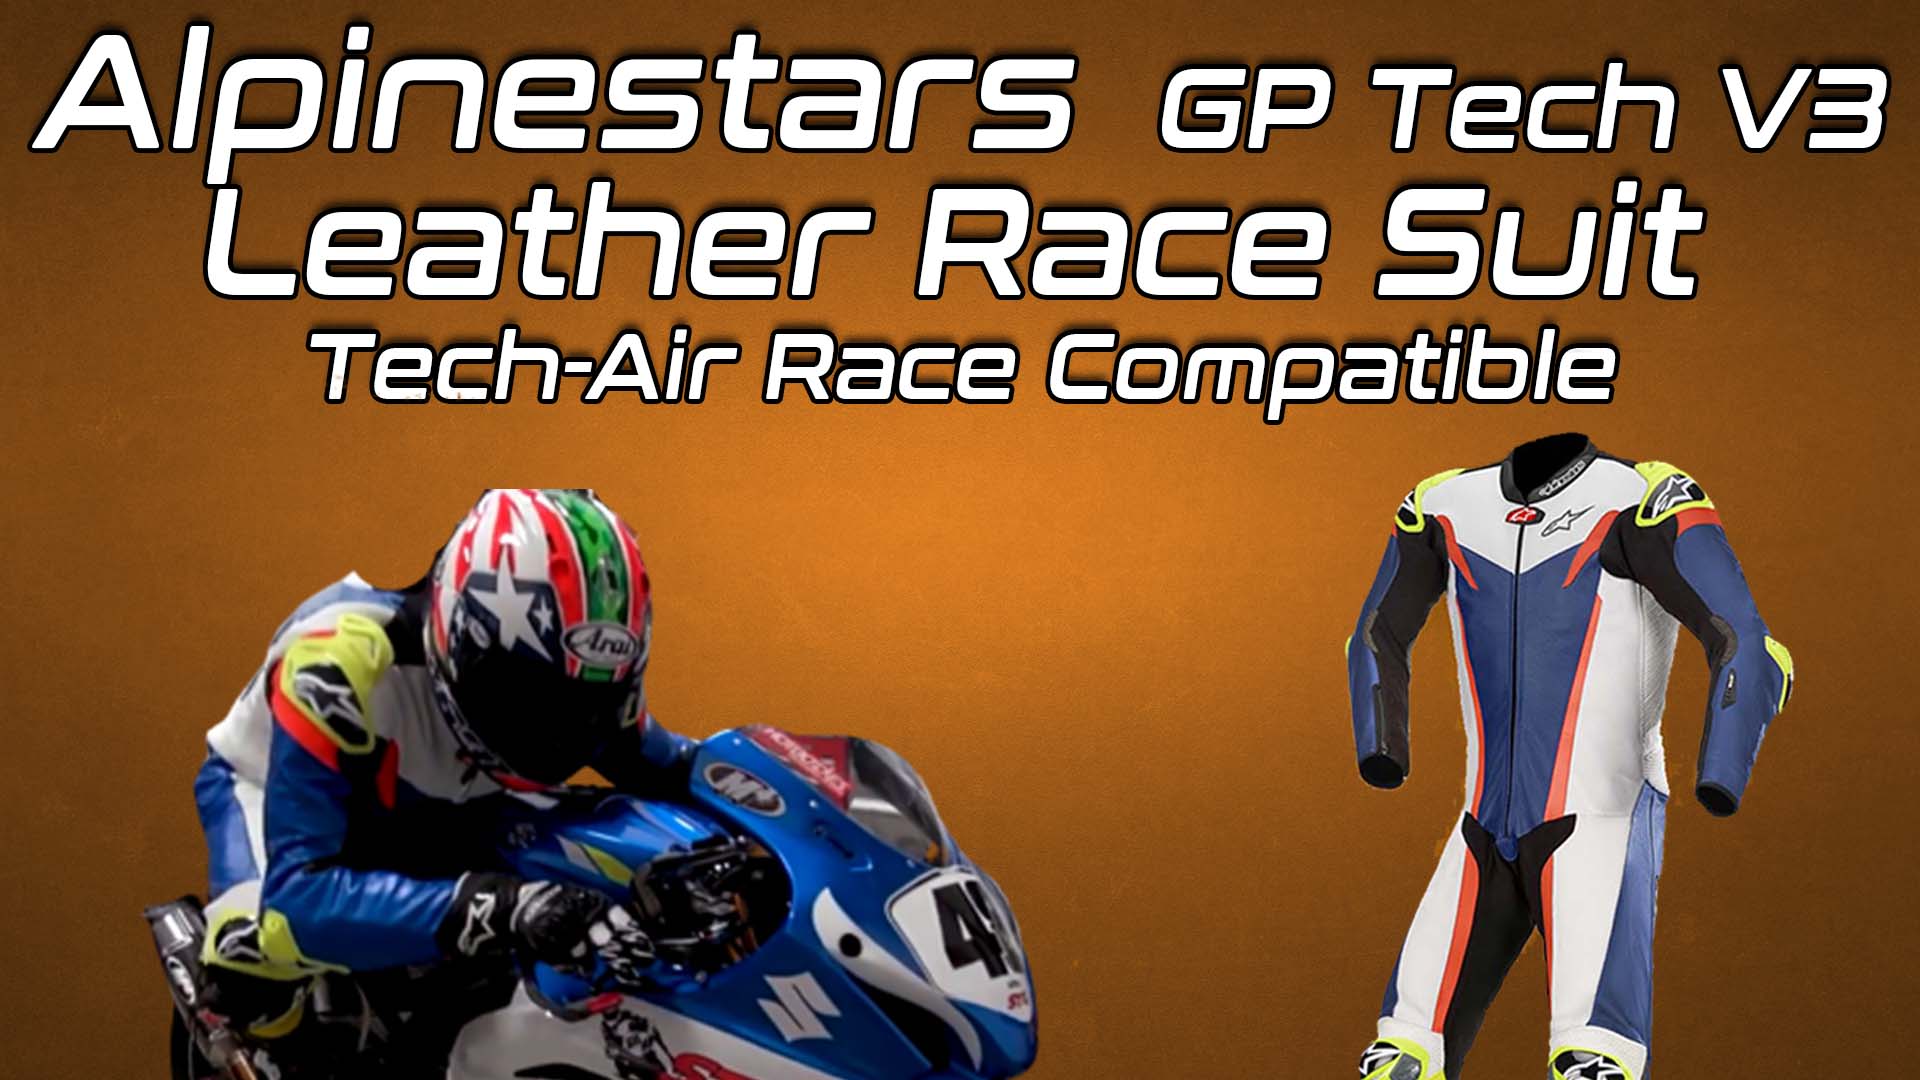 Alpinestars GP Tech V3 Leather Race Suit Tech-Air Race Compatible